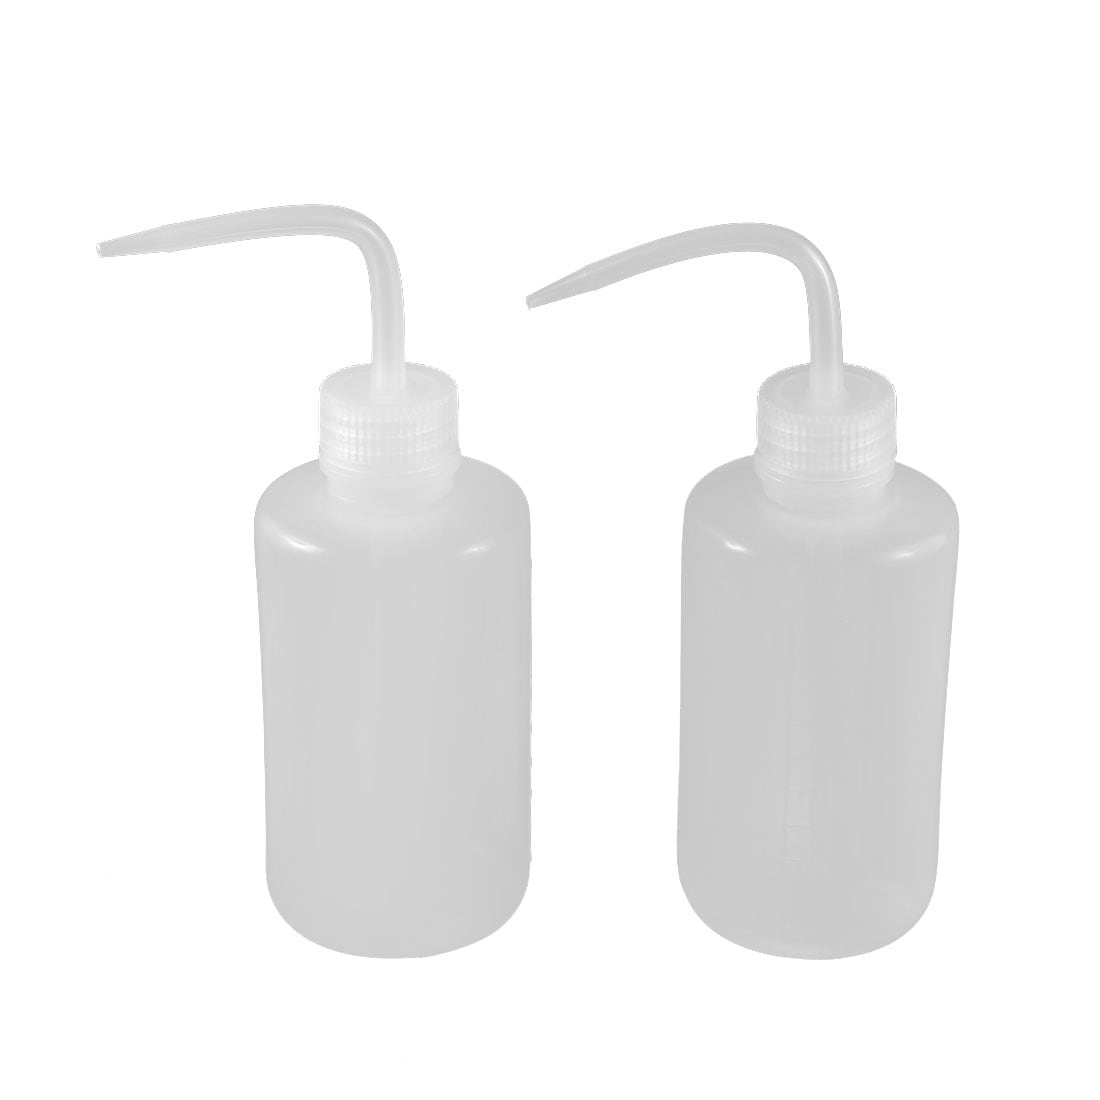 3Pc, 12oz Black Plastic Squeeze Condiment Bottles, Oil dispenser